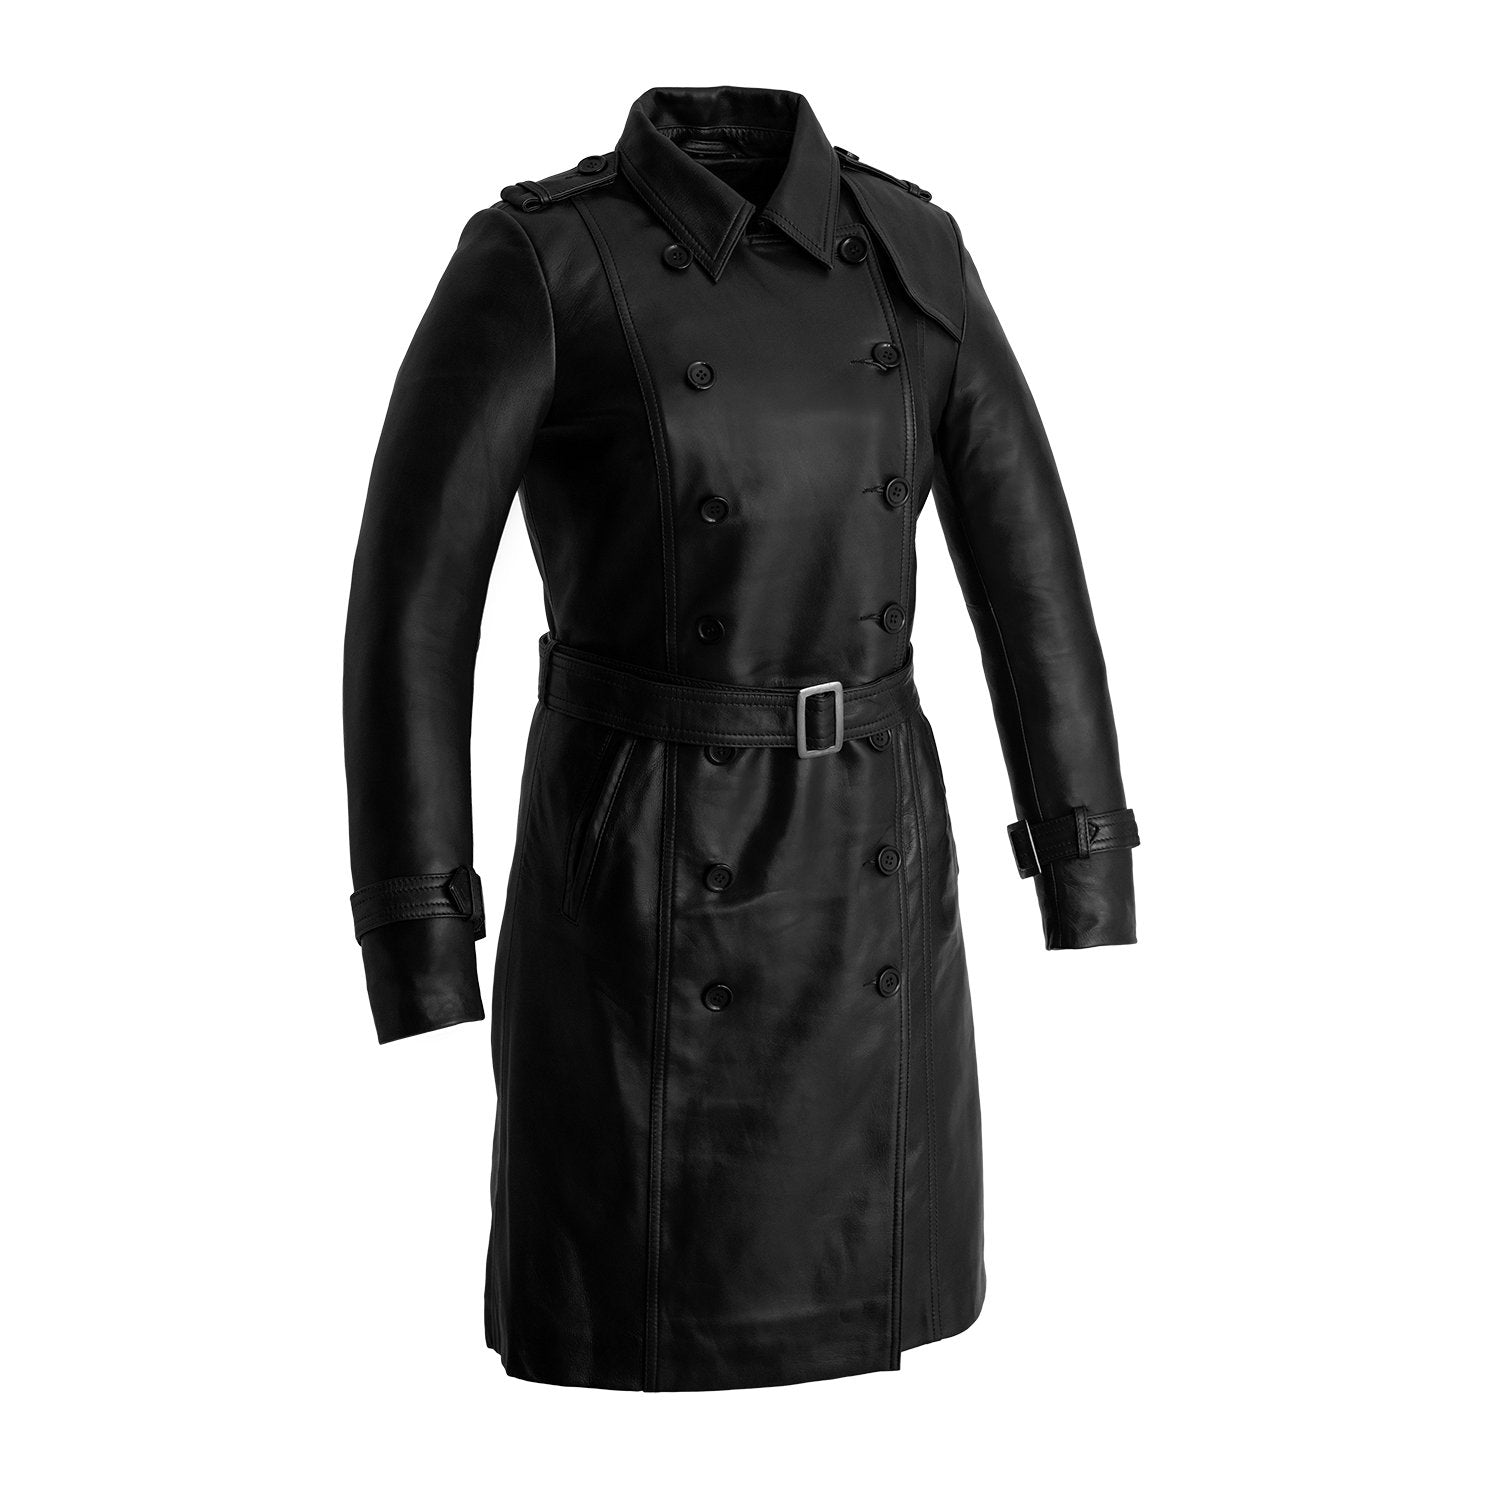 Olivia - Women's Leather Jacket Black Jacket Best Leather Ny Black XS 